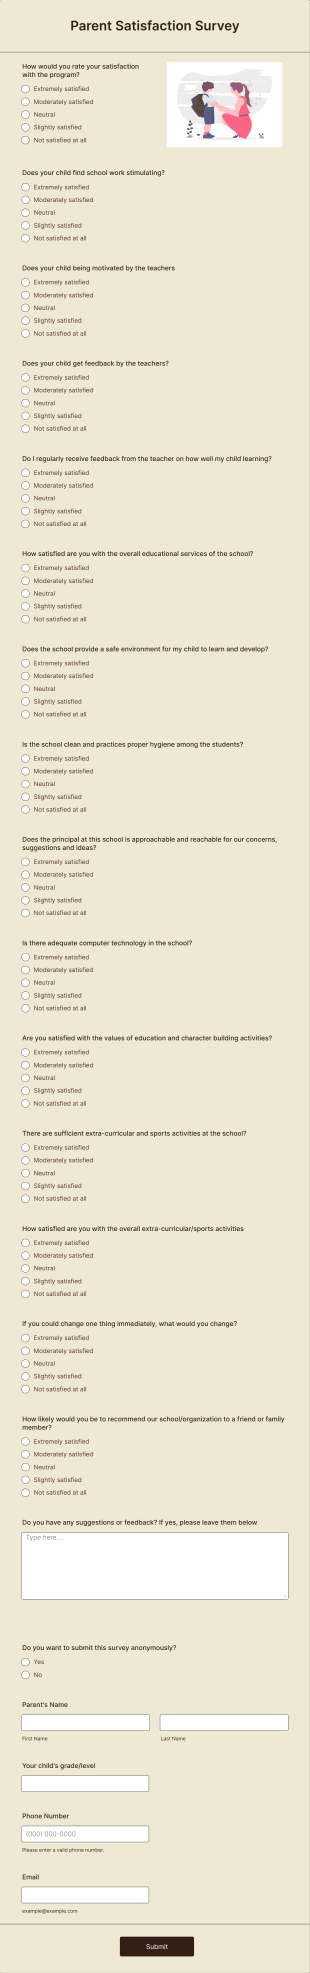 Parent Satisfaction Survey Form Template